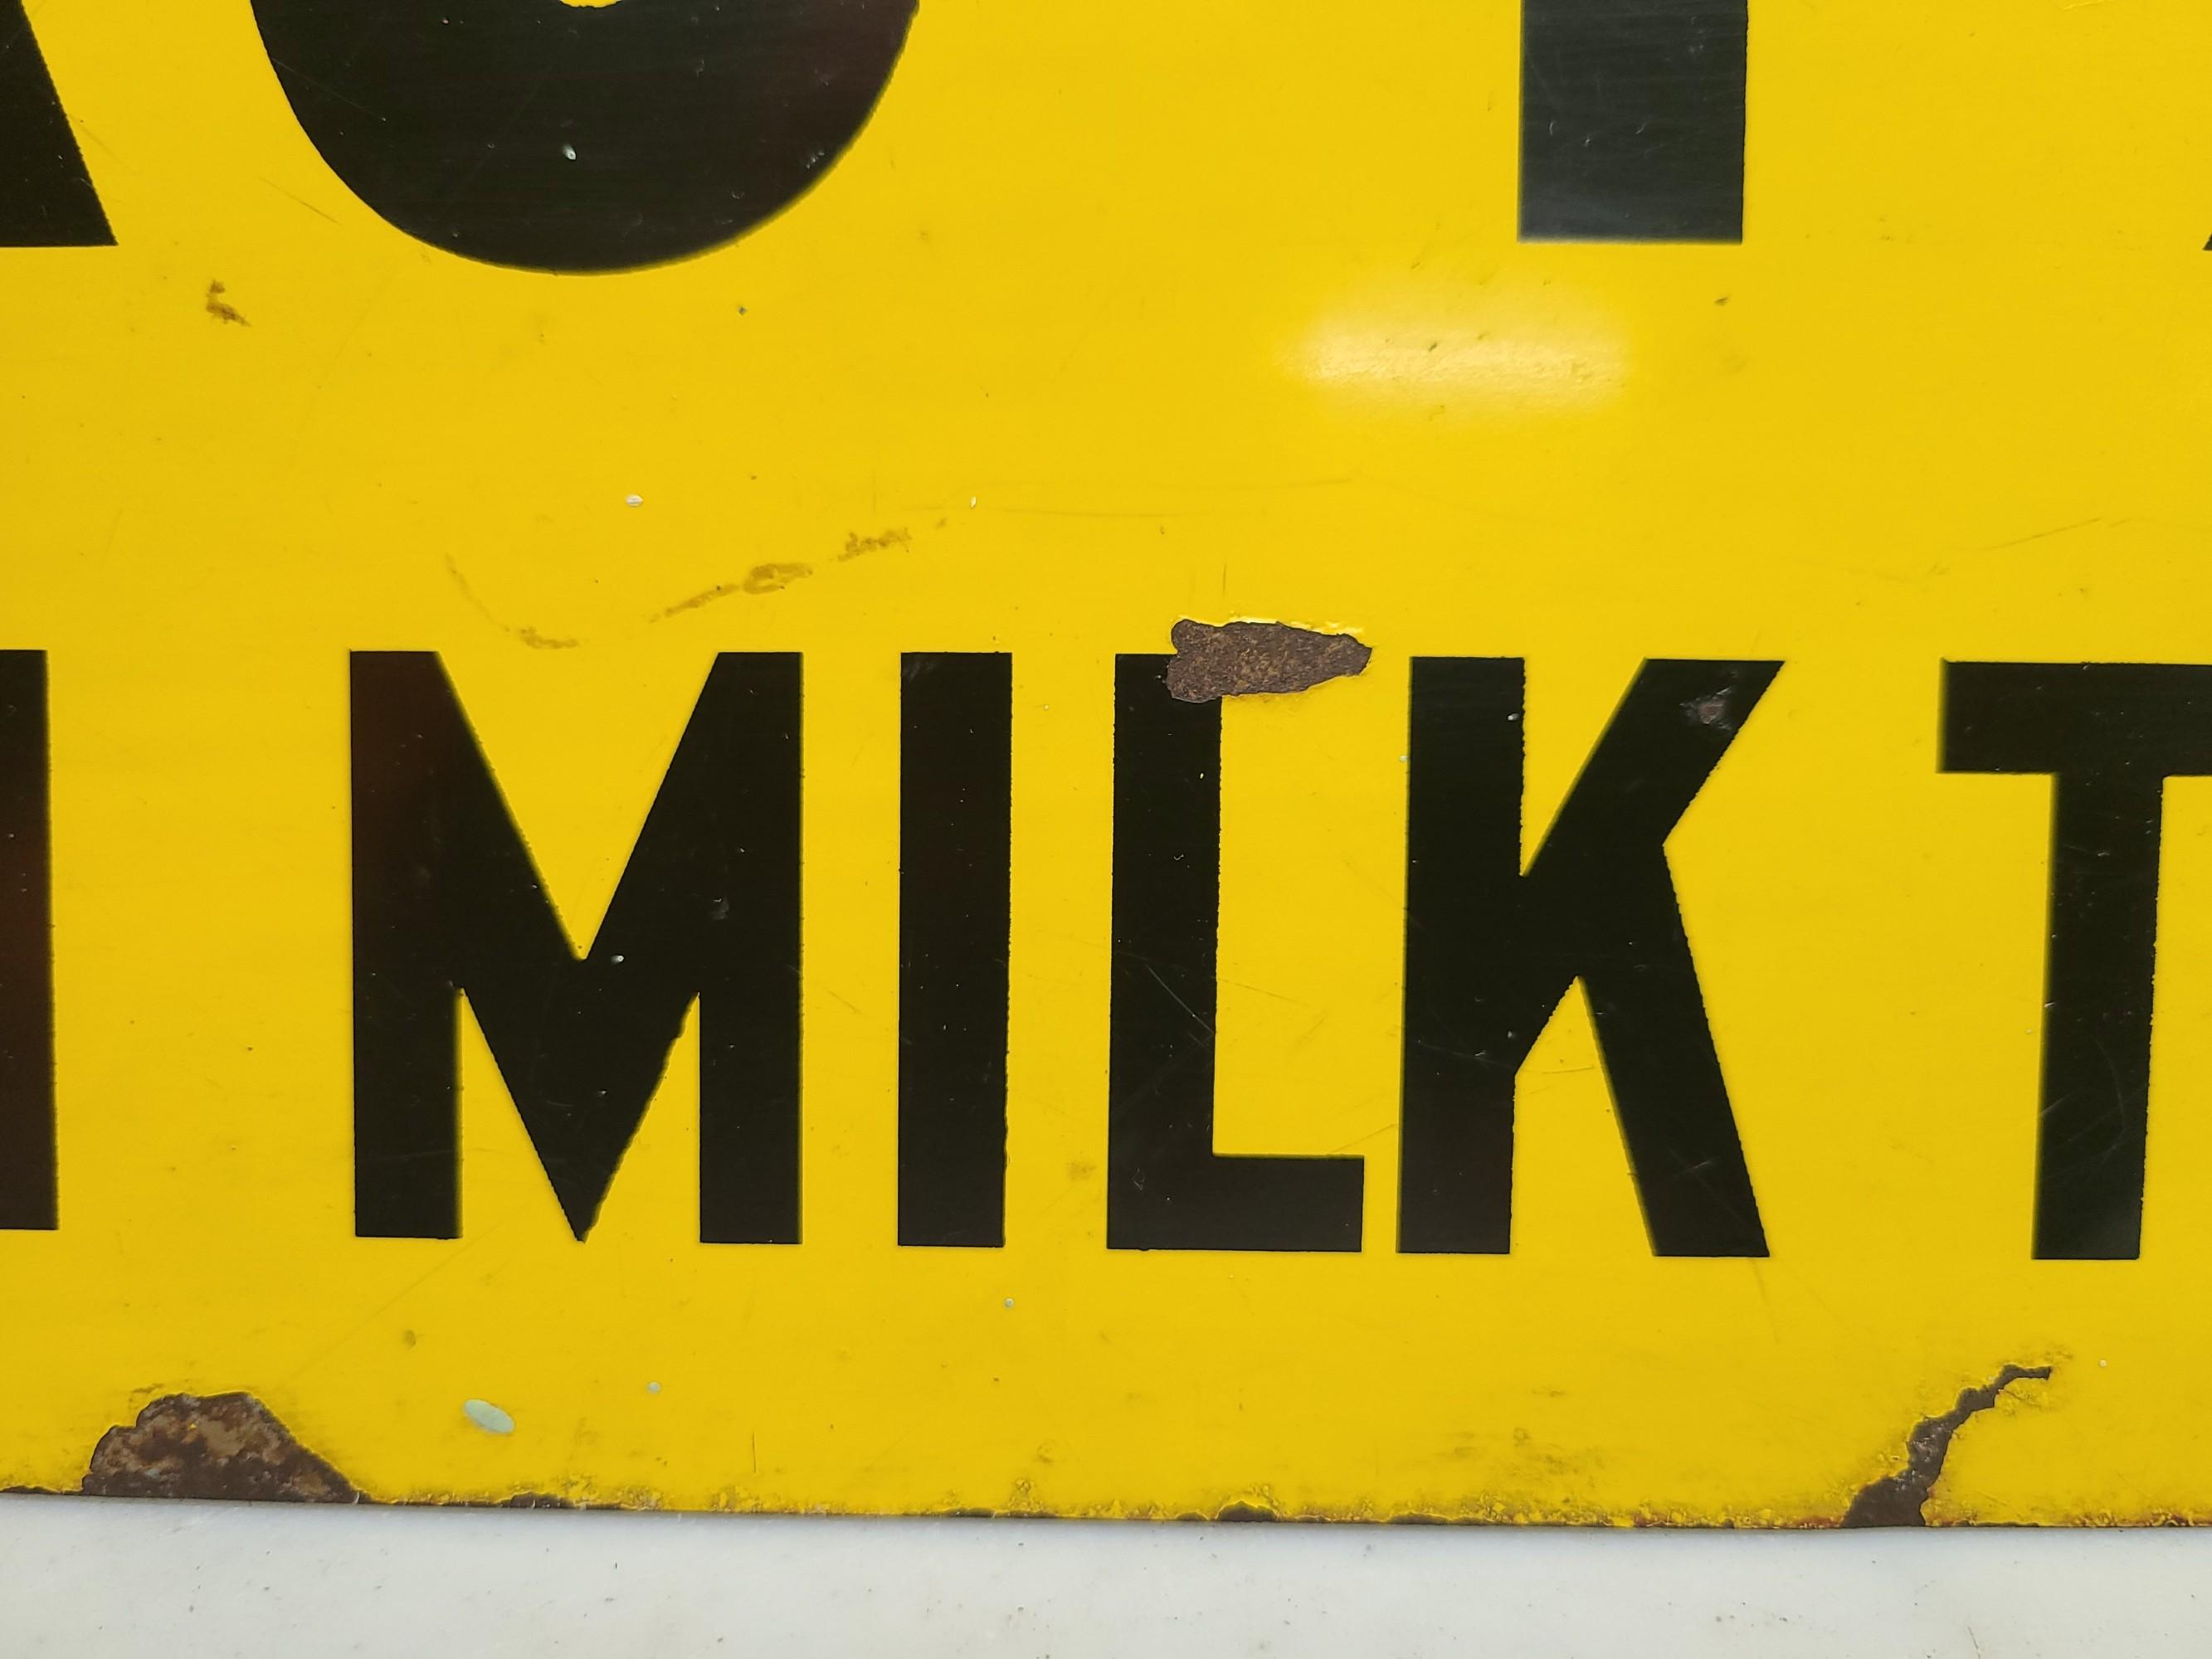 SST, Vacuum Milk Tank Sign